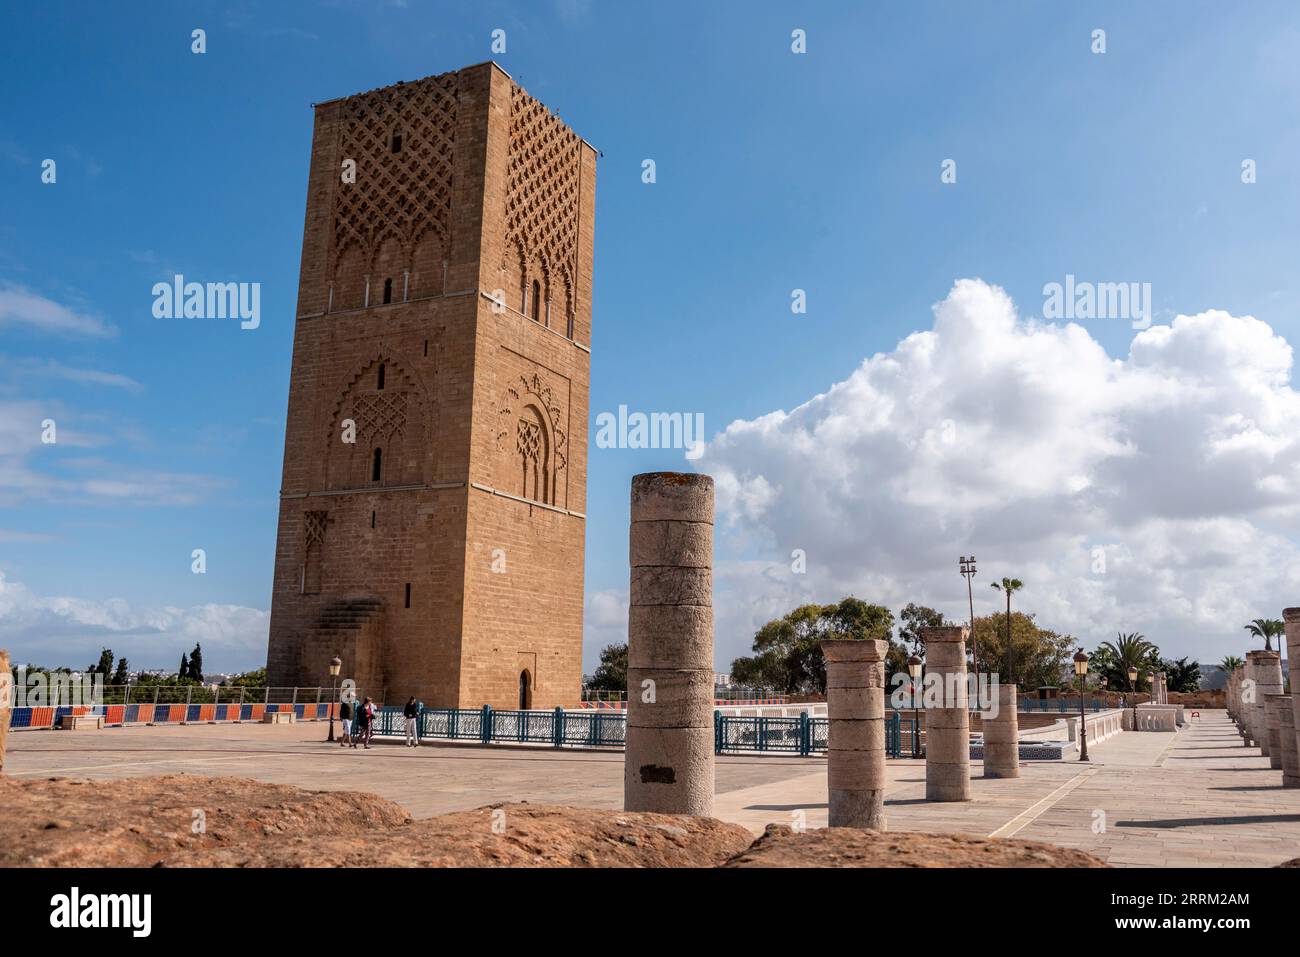 Iconica torre Hassan nel centro di Rabat, progettata come minareto ancora più alto di una moschea, in Marocco Foto Stock